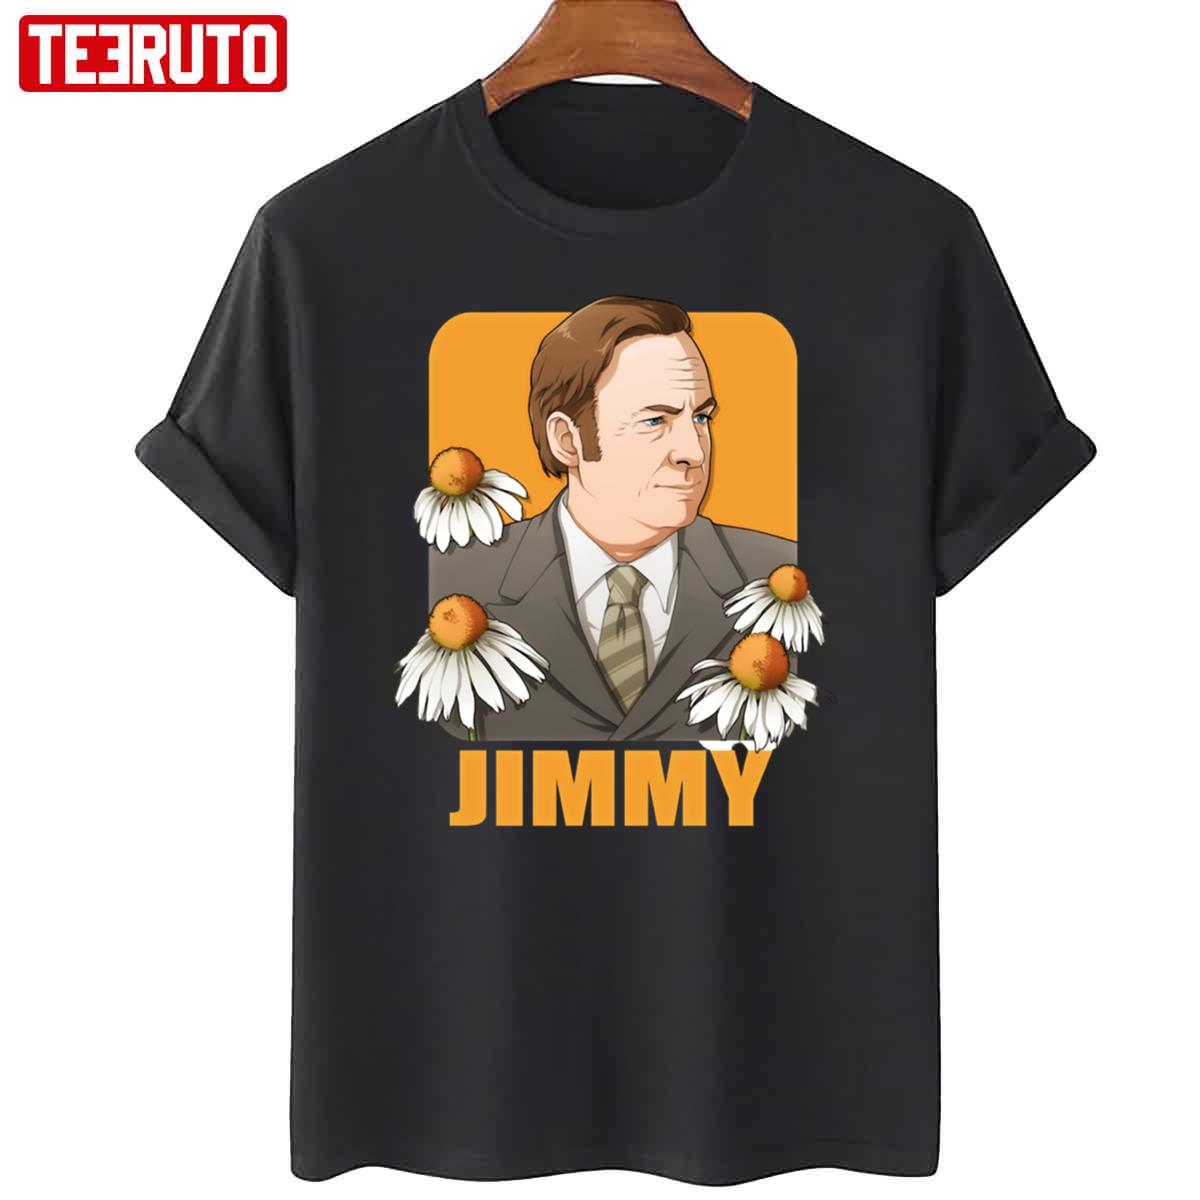 Better Call Saul Saul Goodman TV Jimmy Series Unisex T-Shirt